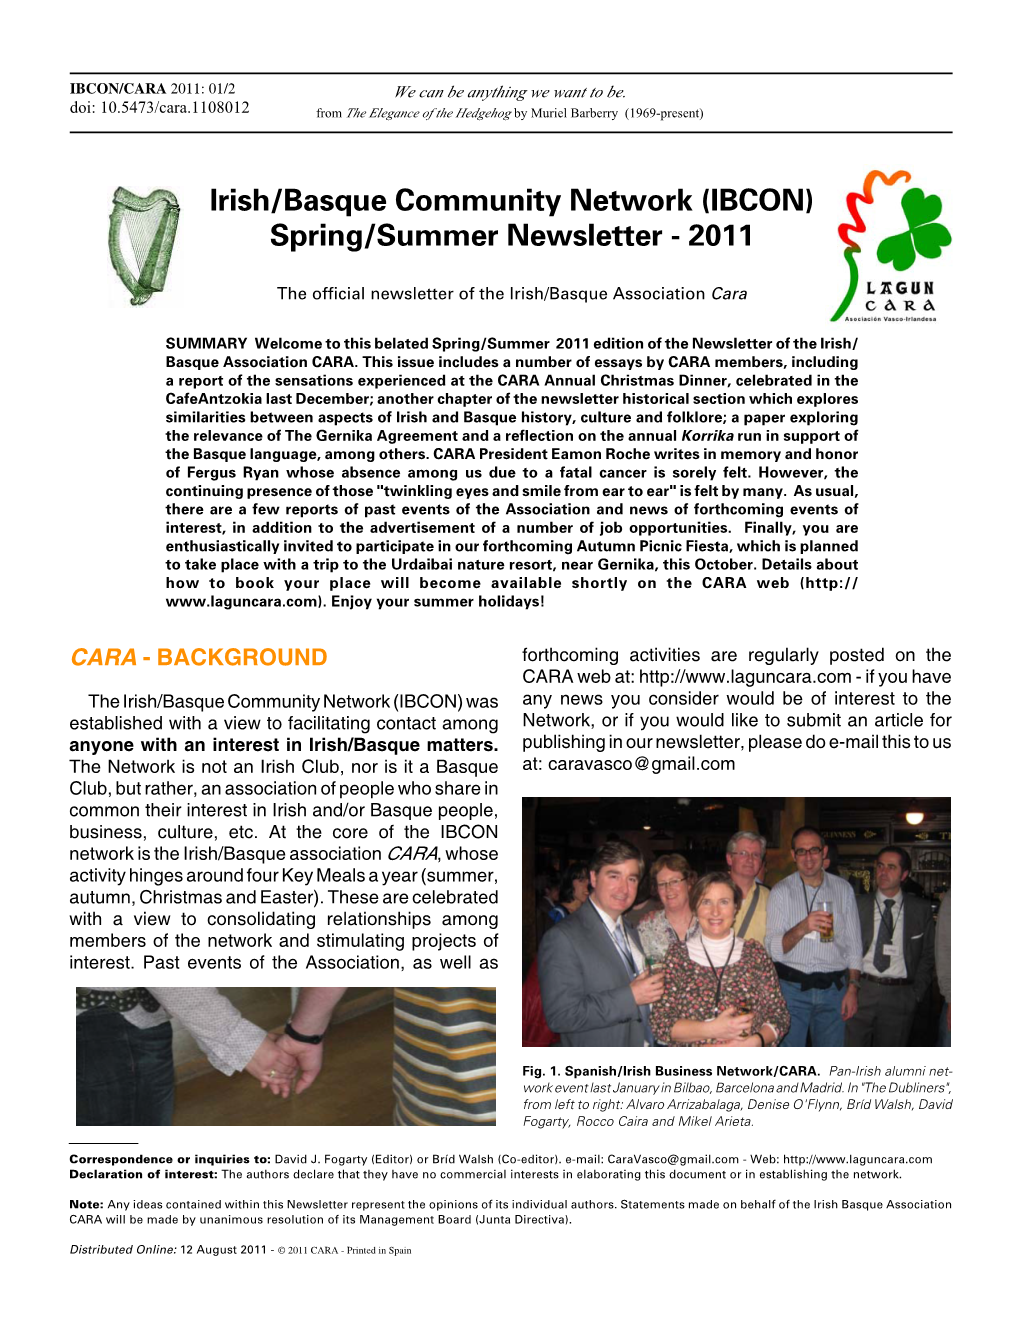 Irish/Basque Community Network (IBCON) Spring/Summer Newsletter - 2011